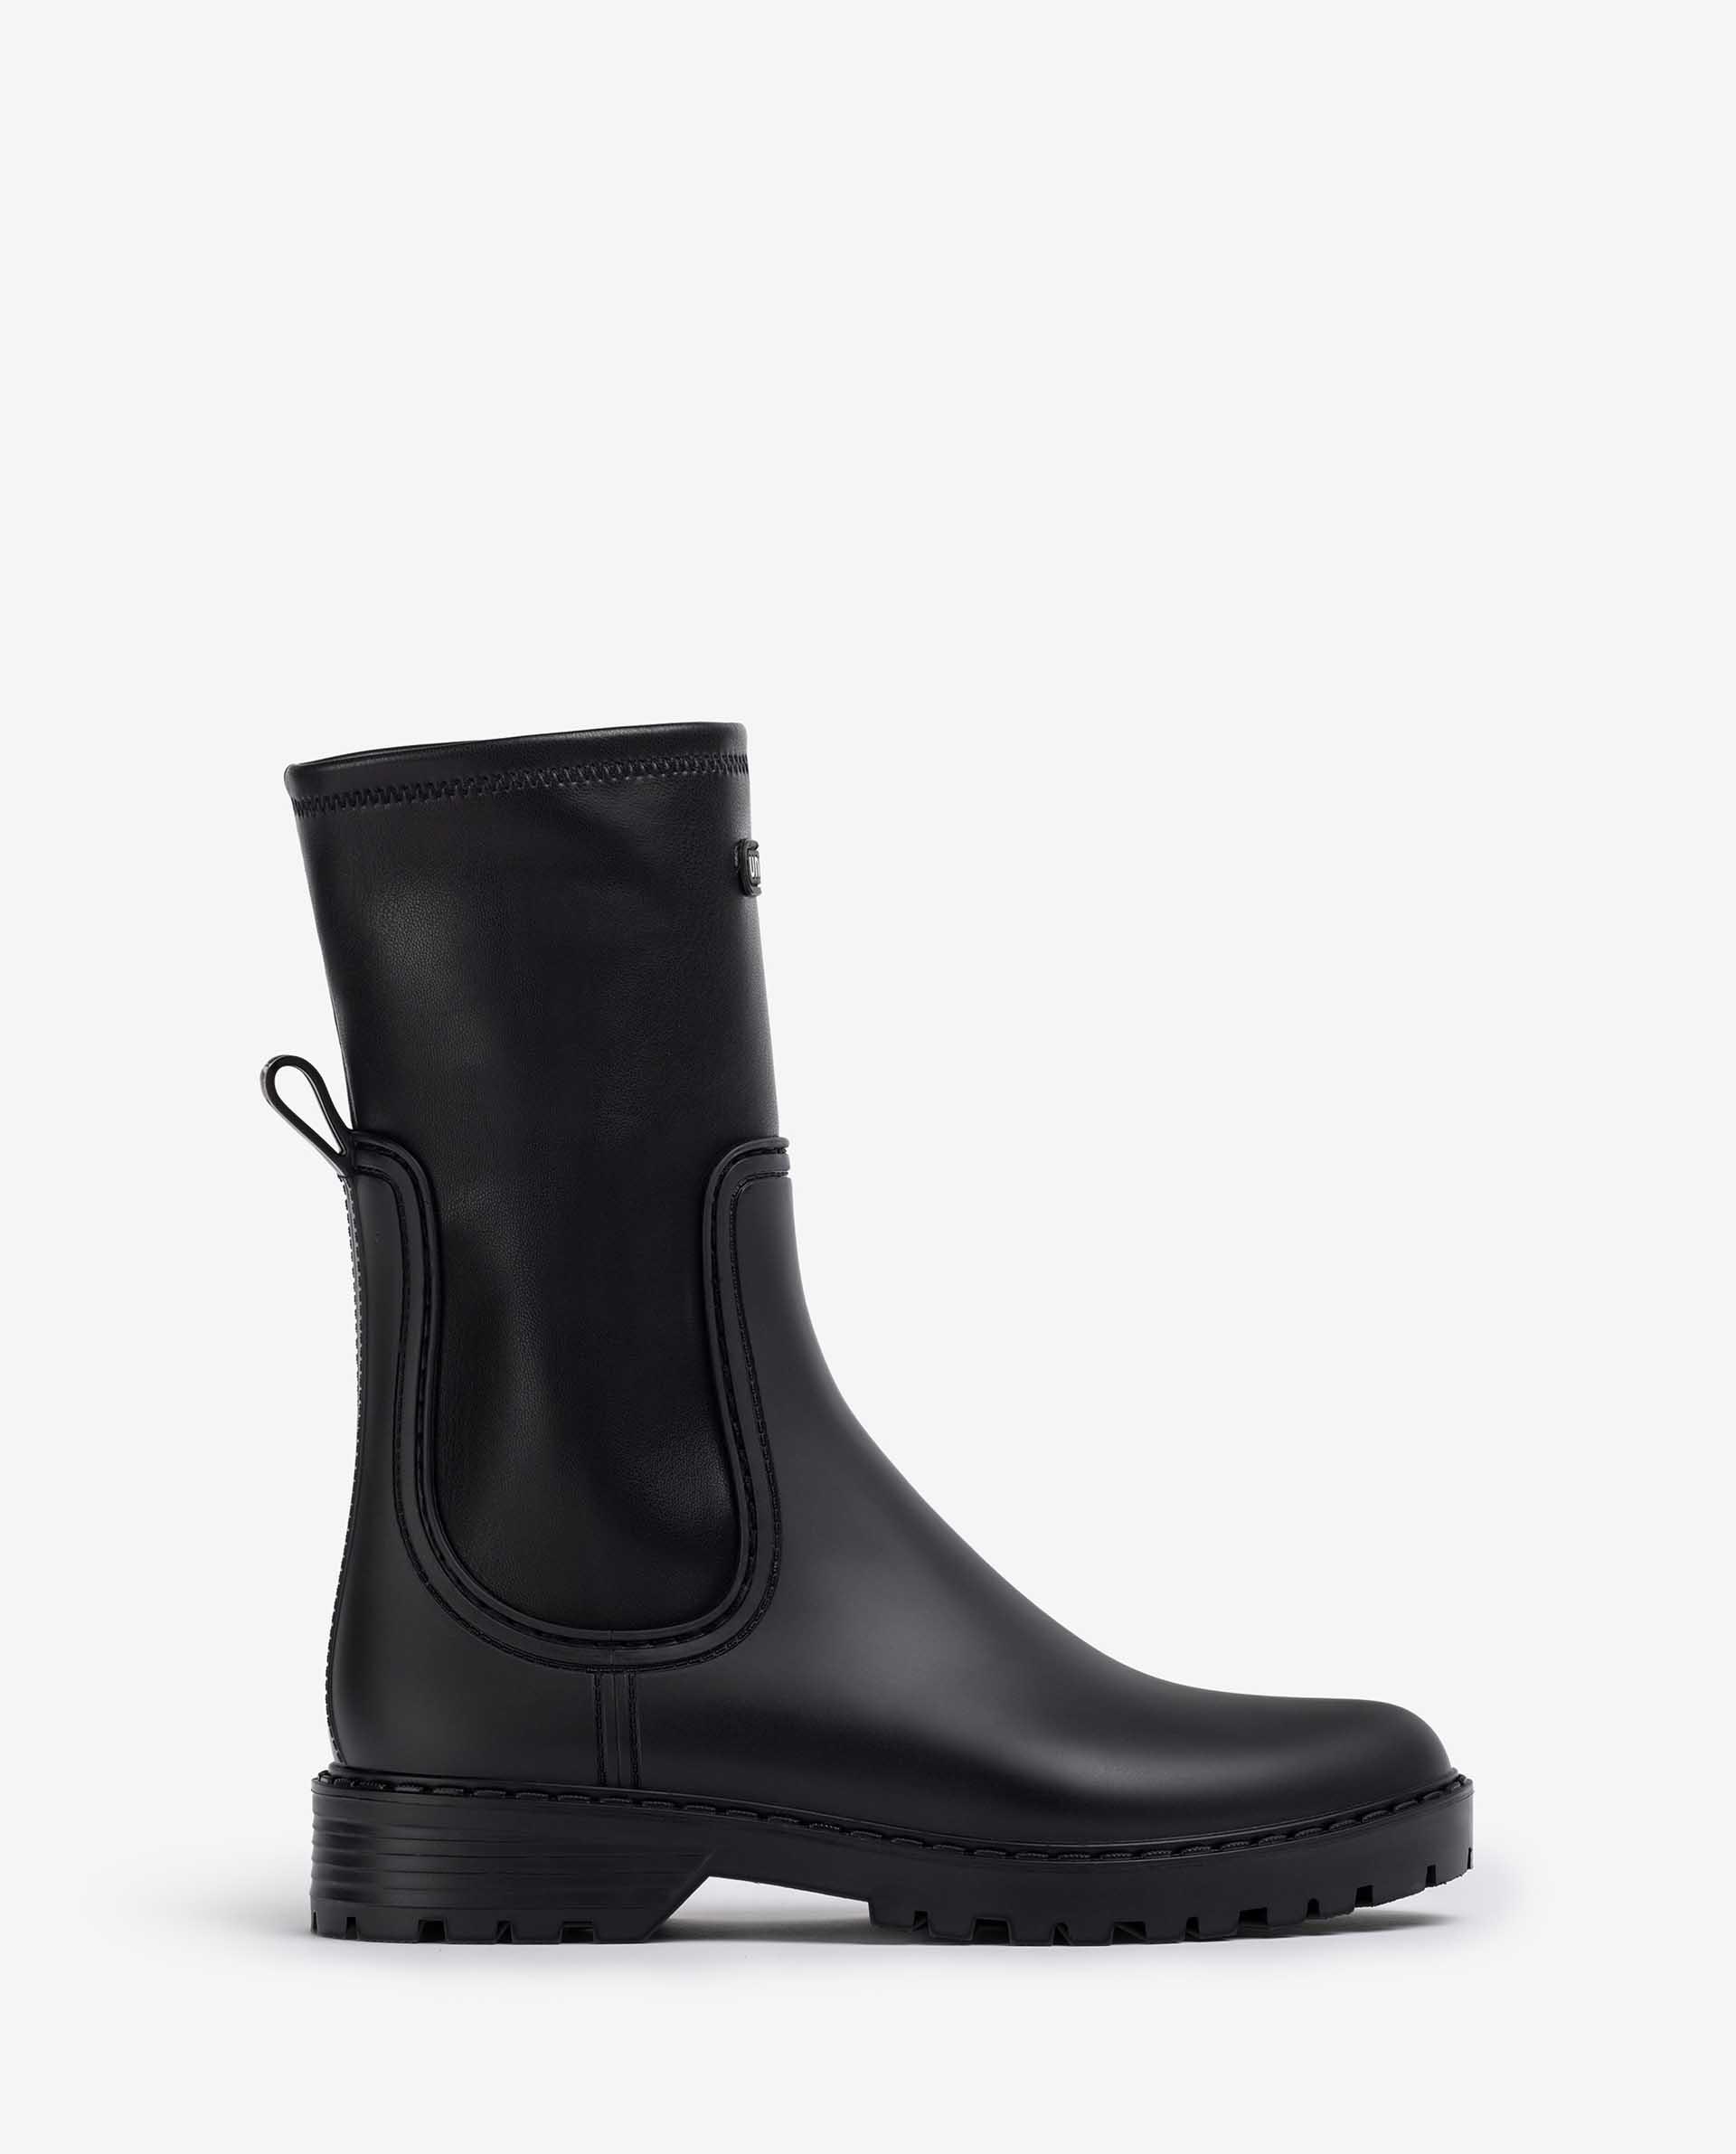 mysoft Tall Rain Boots for Women Waterproof Adult Boots for Women Footware Wellies Garden Boots 